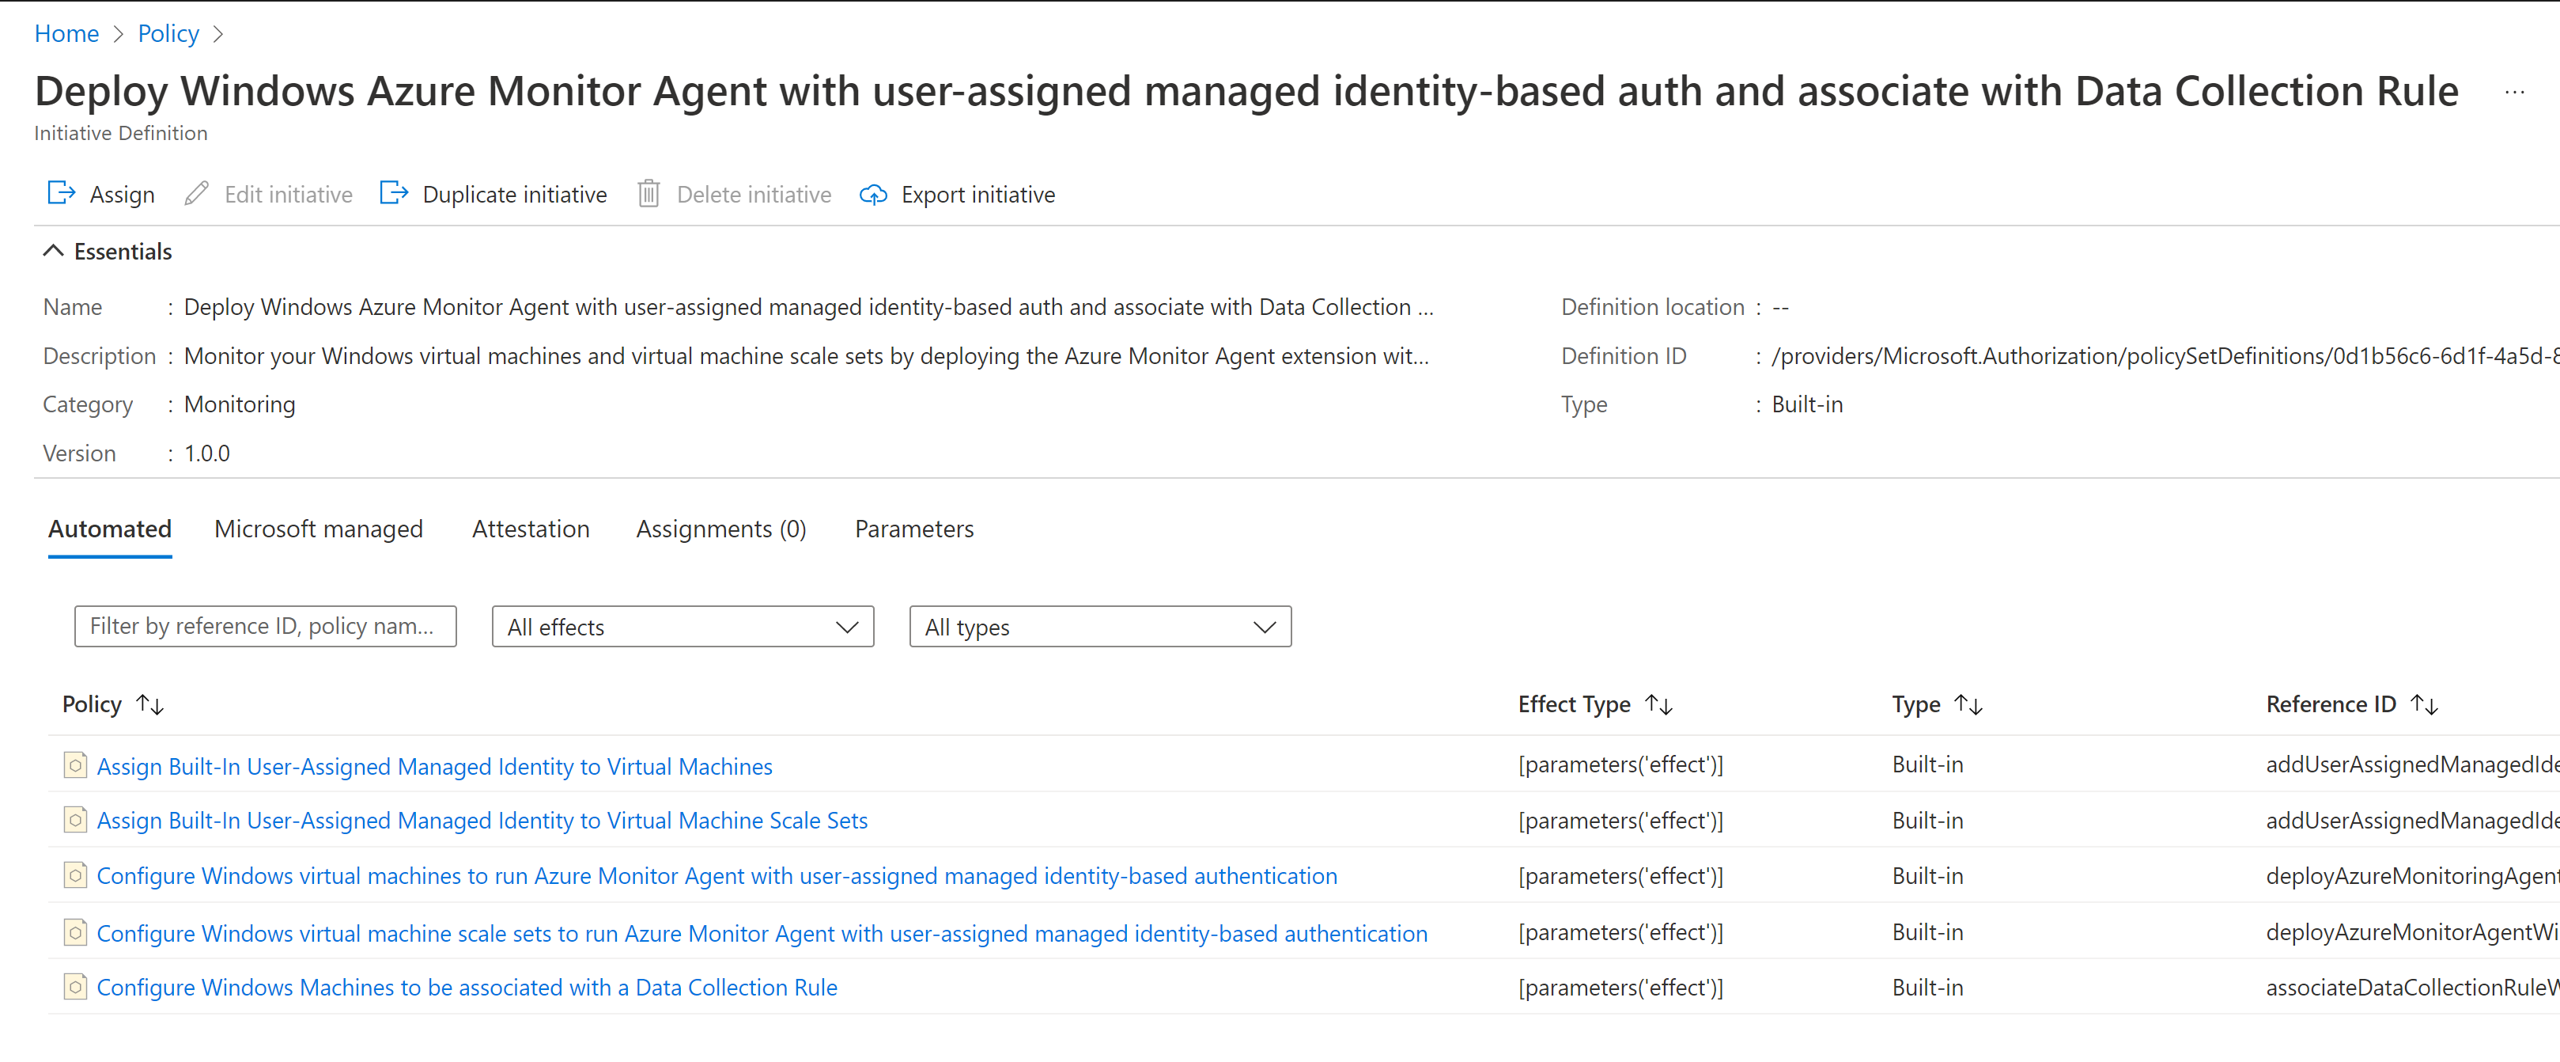 Captura de tela parcial da página Definições do Azure Policy mostrando duas iniciativas de políticas internas para configurar o Agente do Azure Monitor.